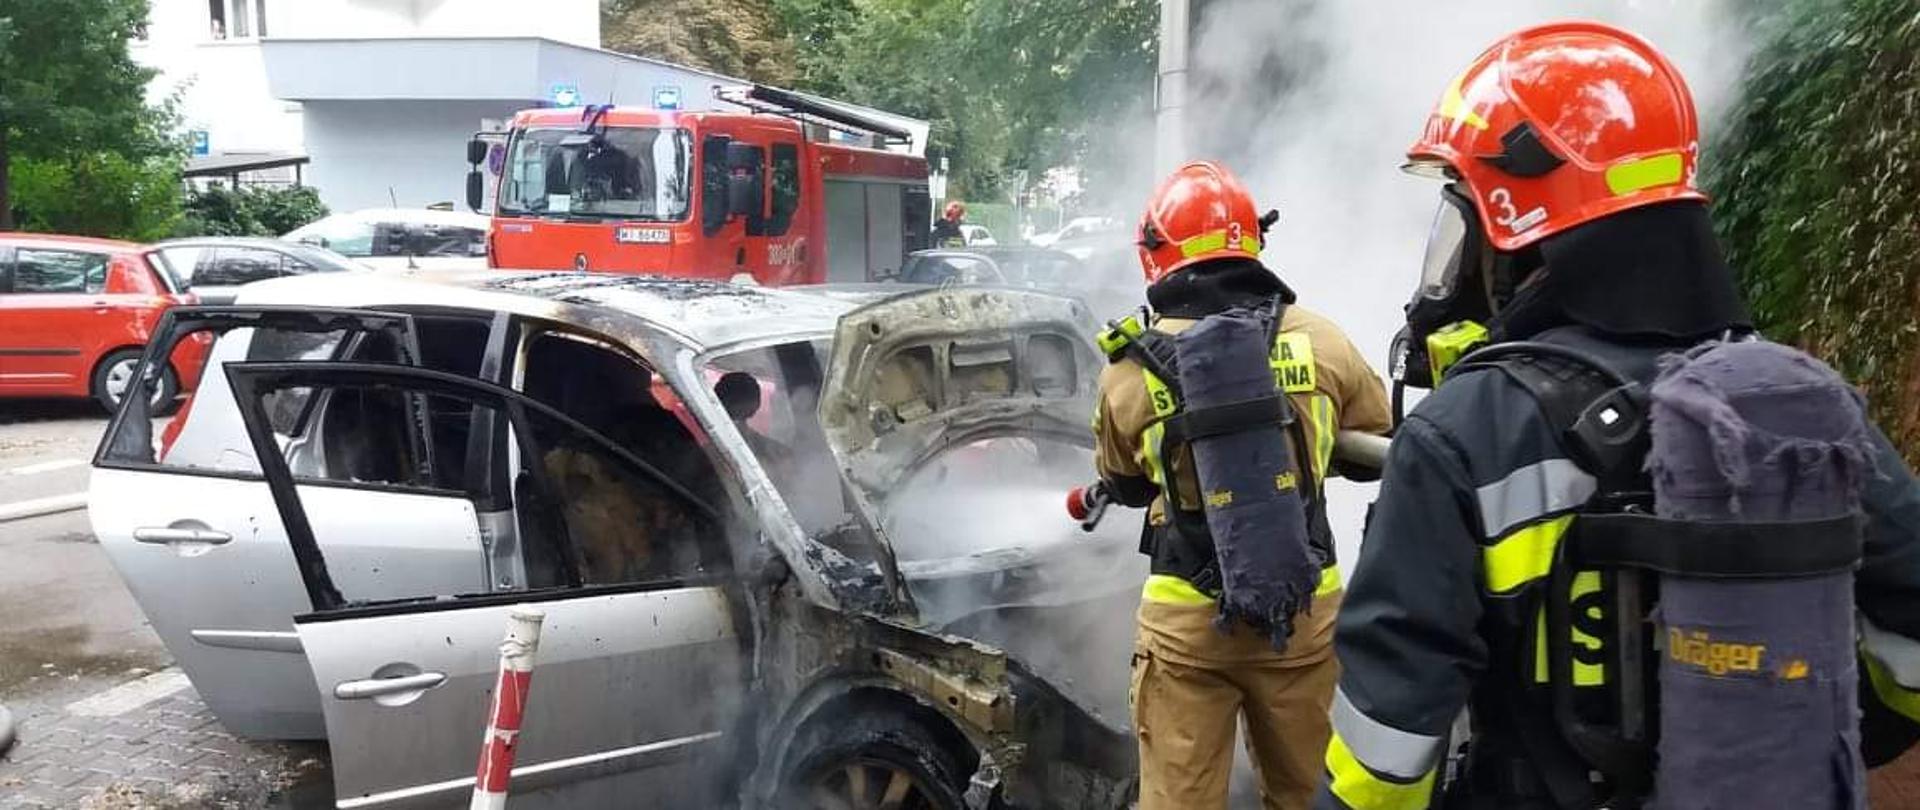 Na zdjęciu widać dwóch strażaków w aparatach z powietrzem gaszącym samochód osobowy. W tle widoczny samochód straży pożarnej.